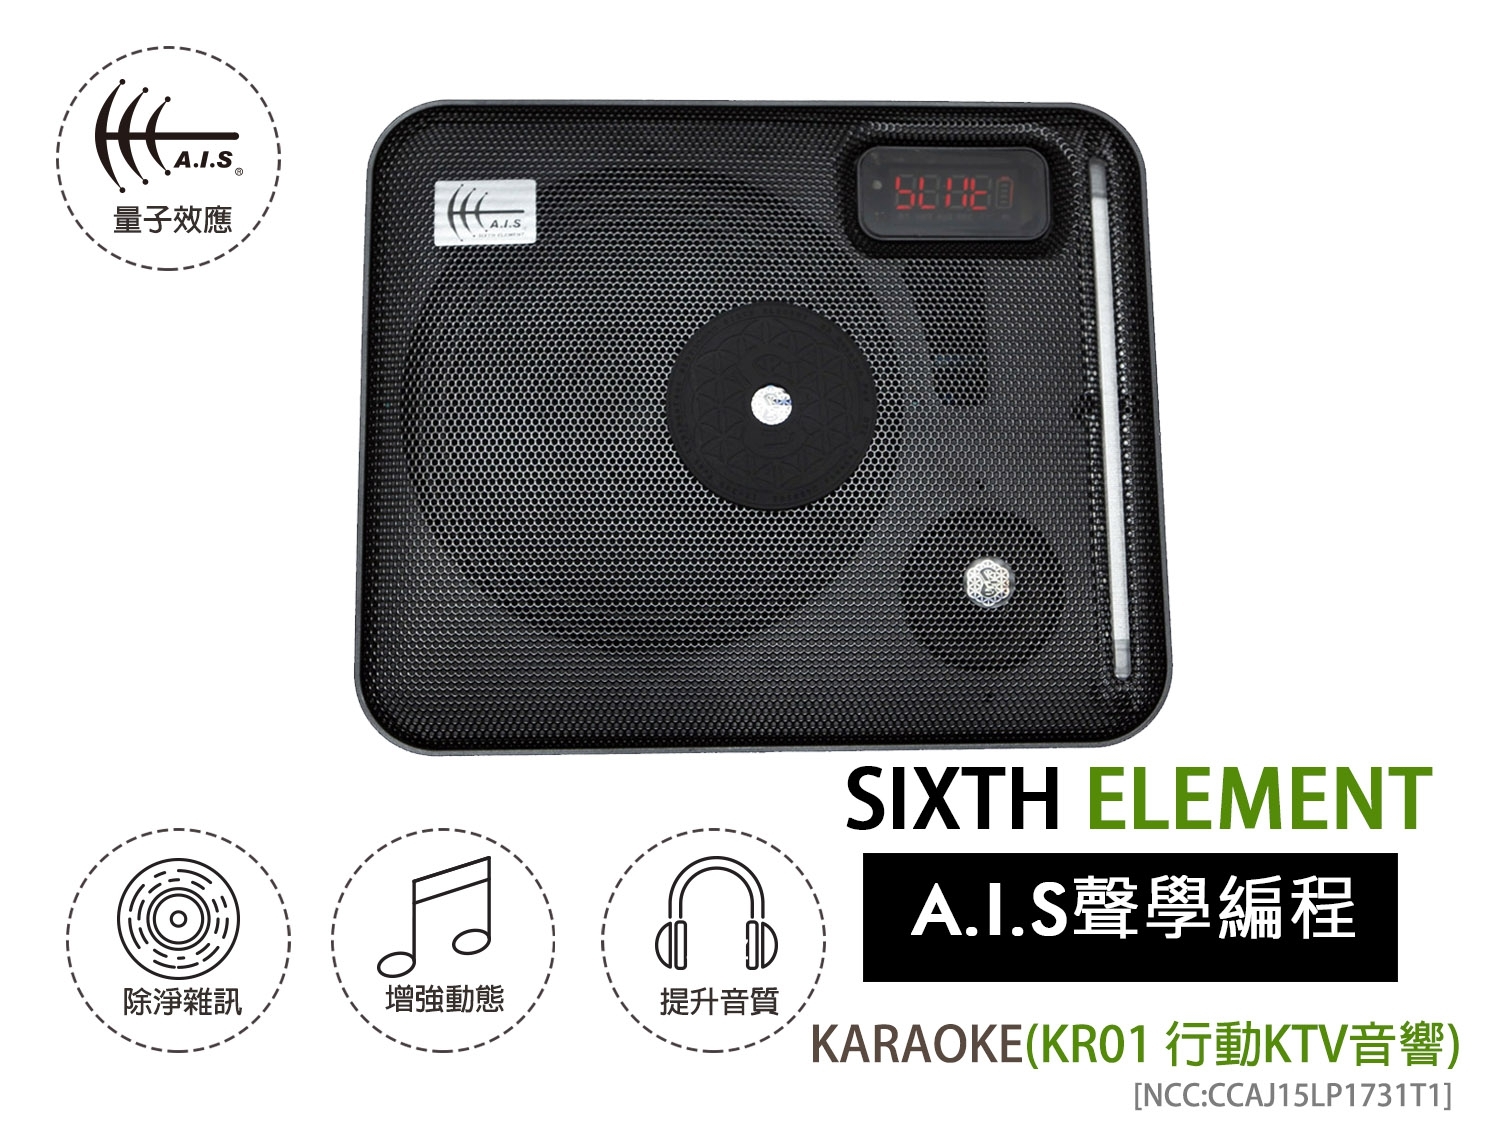 KARAOKE (KR01 行動KTV音響) KARAOKE (KR01 Portable Karaoke Sound System)